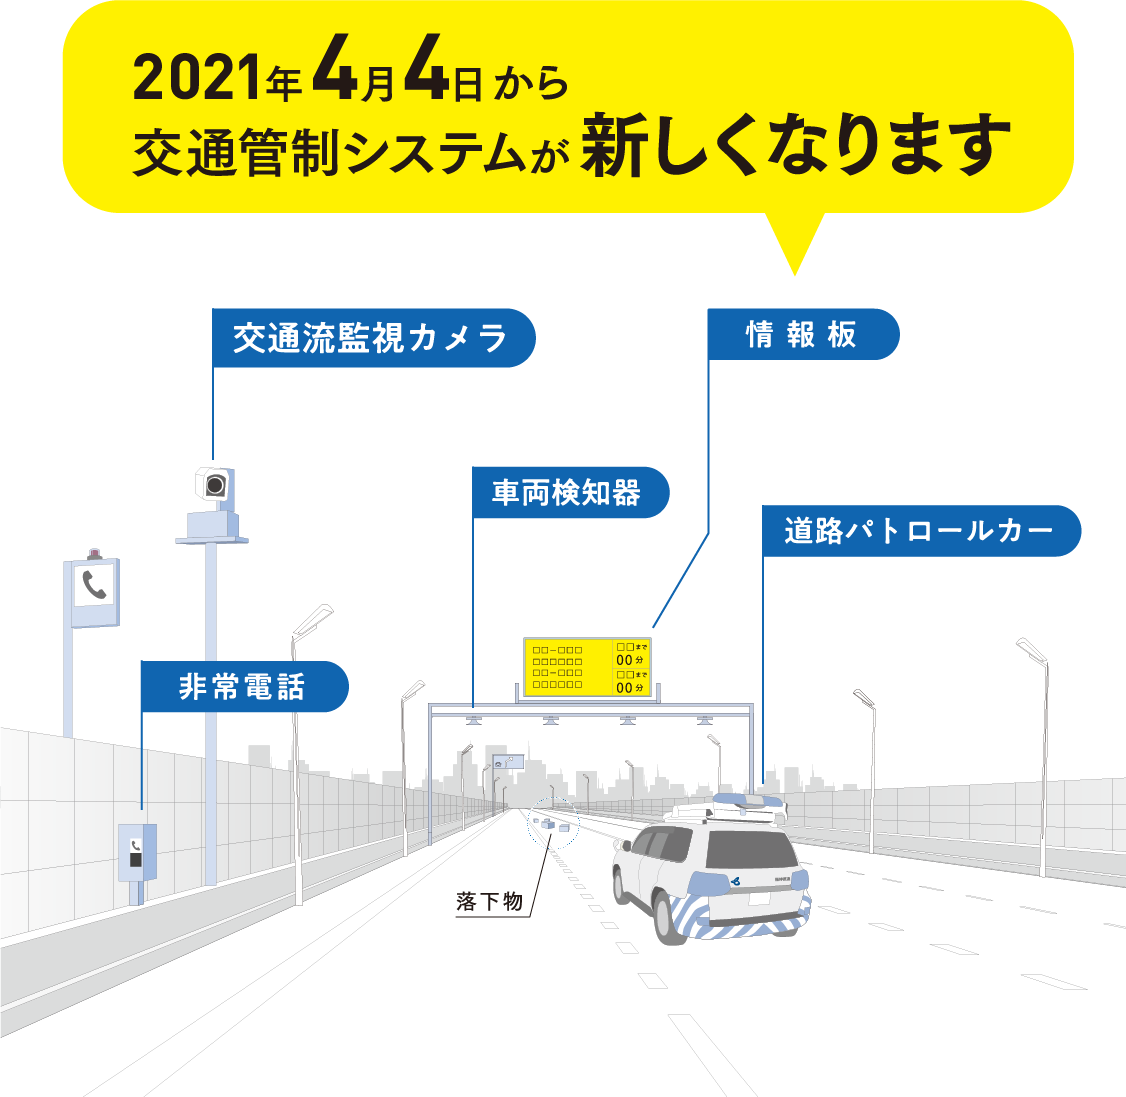 2021年4月4日から交通管制システムが新しくなります